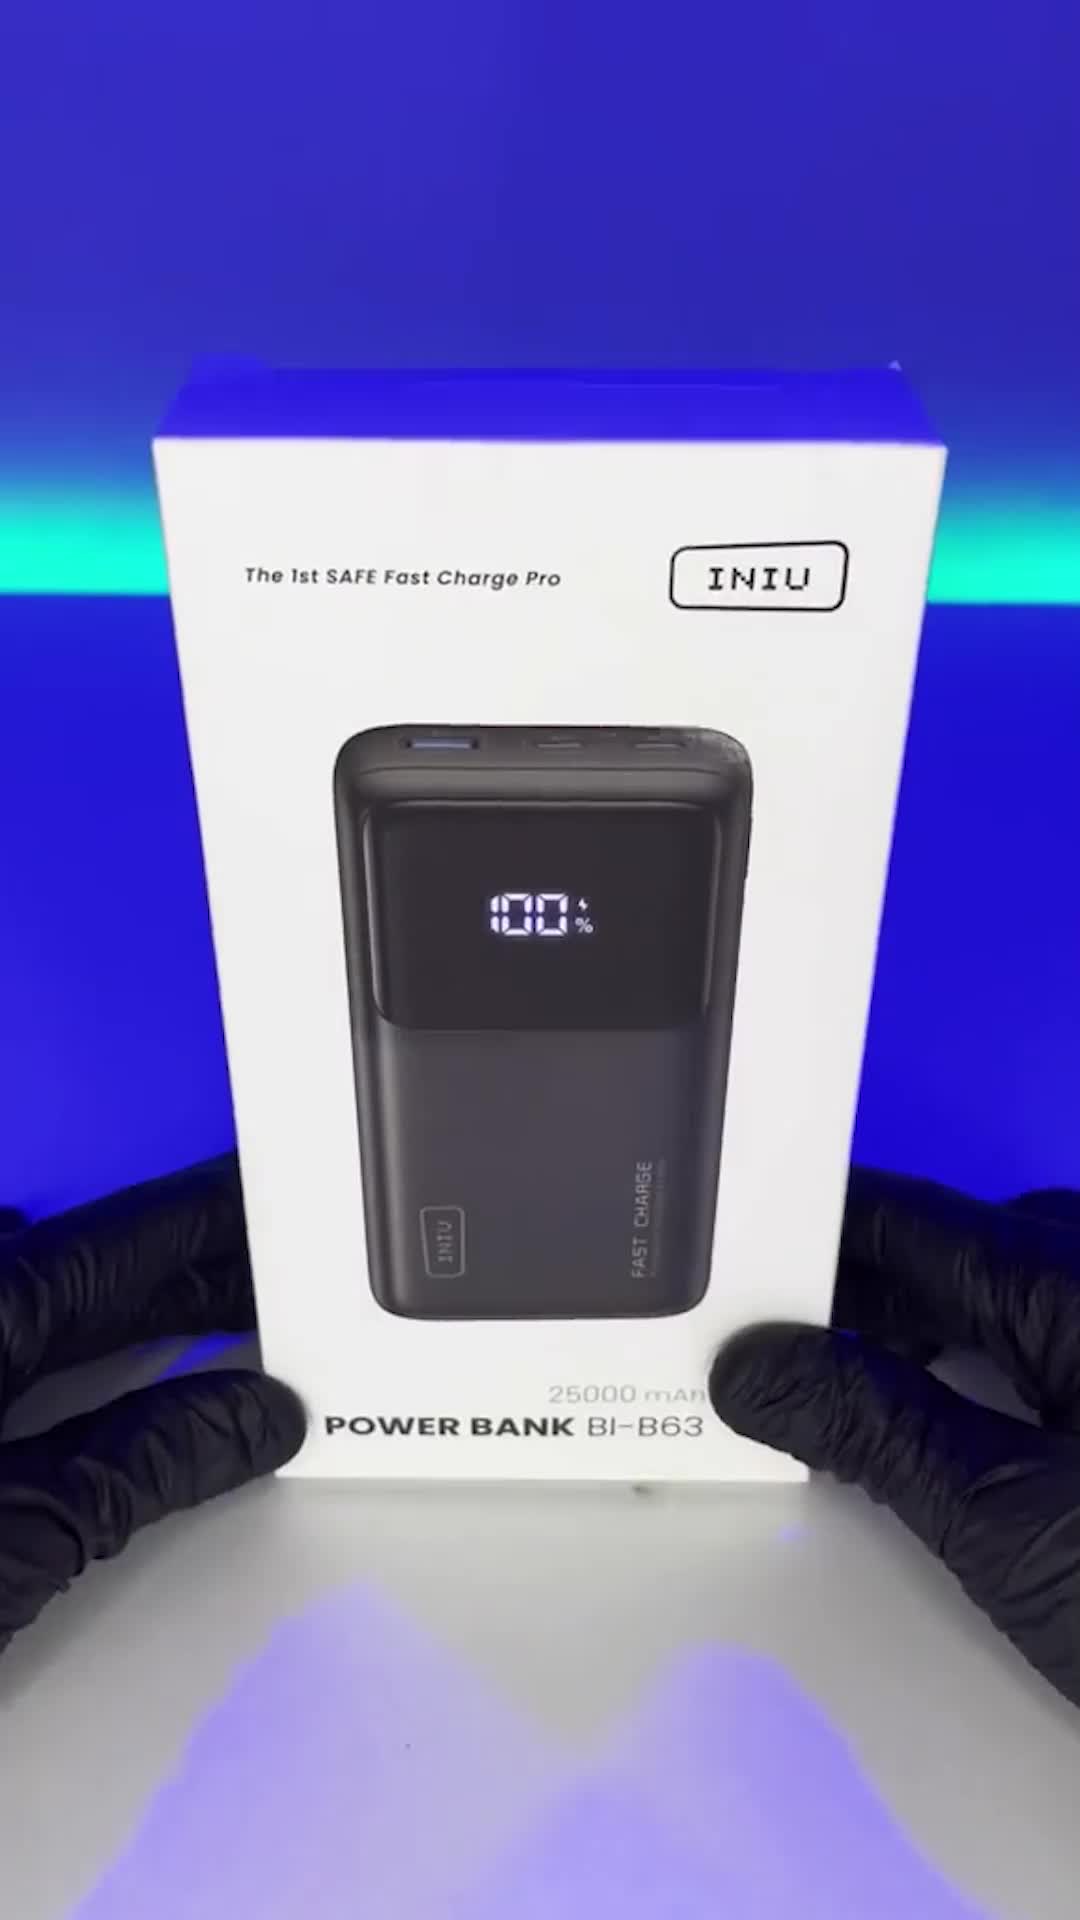 INIU BI-B63 Power Bank User Guide